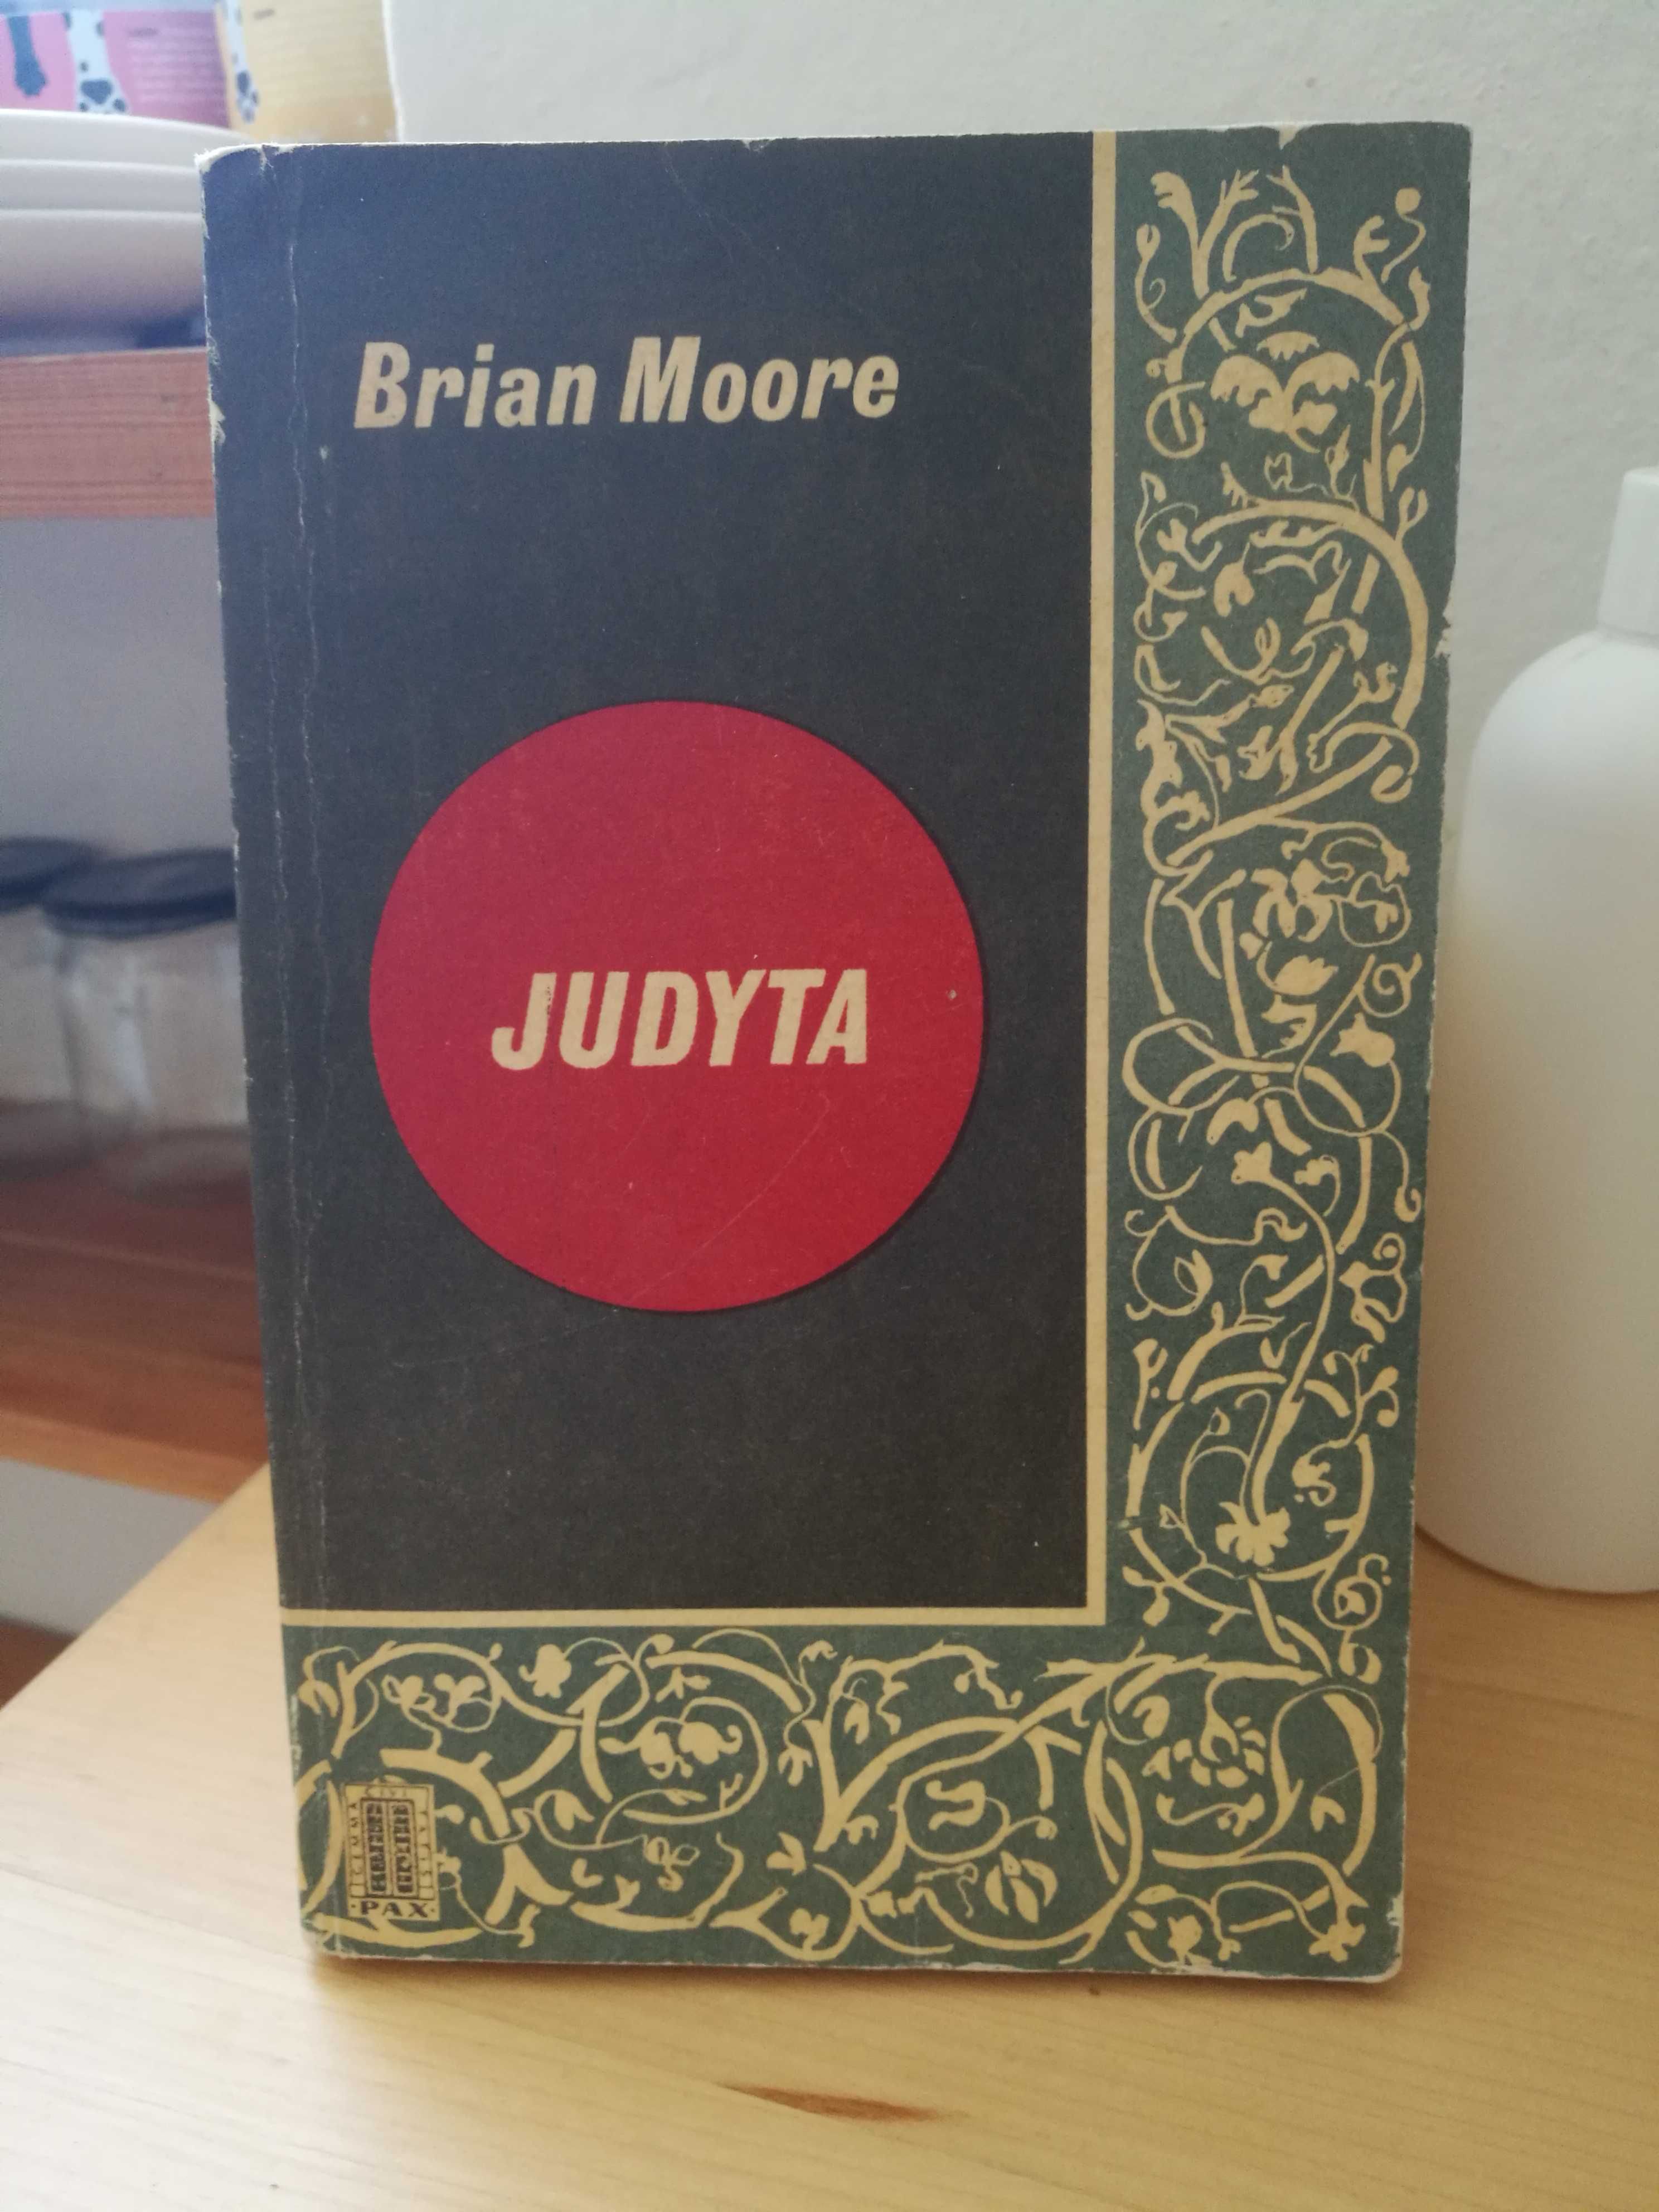 Brian Moore "Judyta"